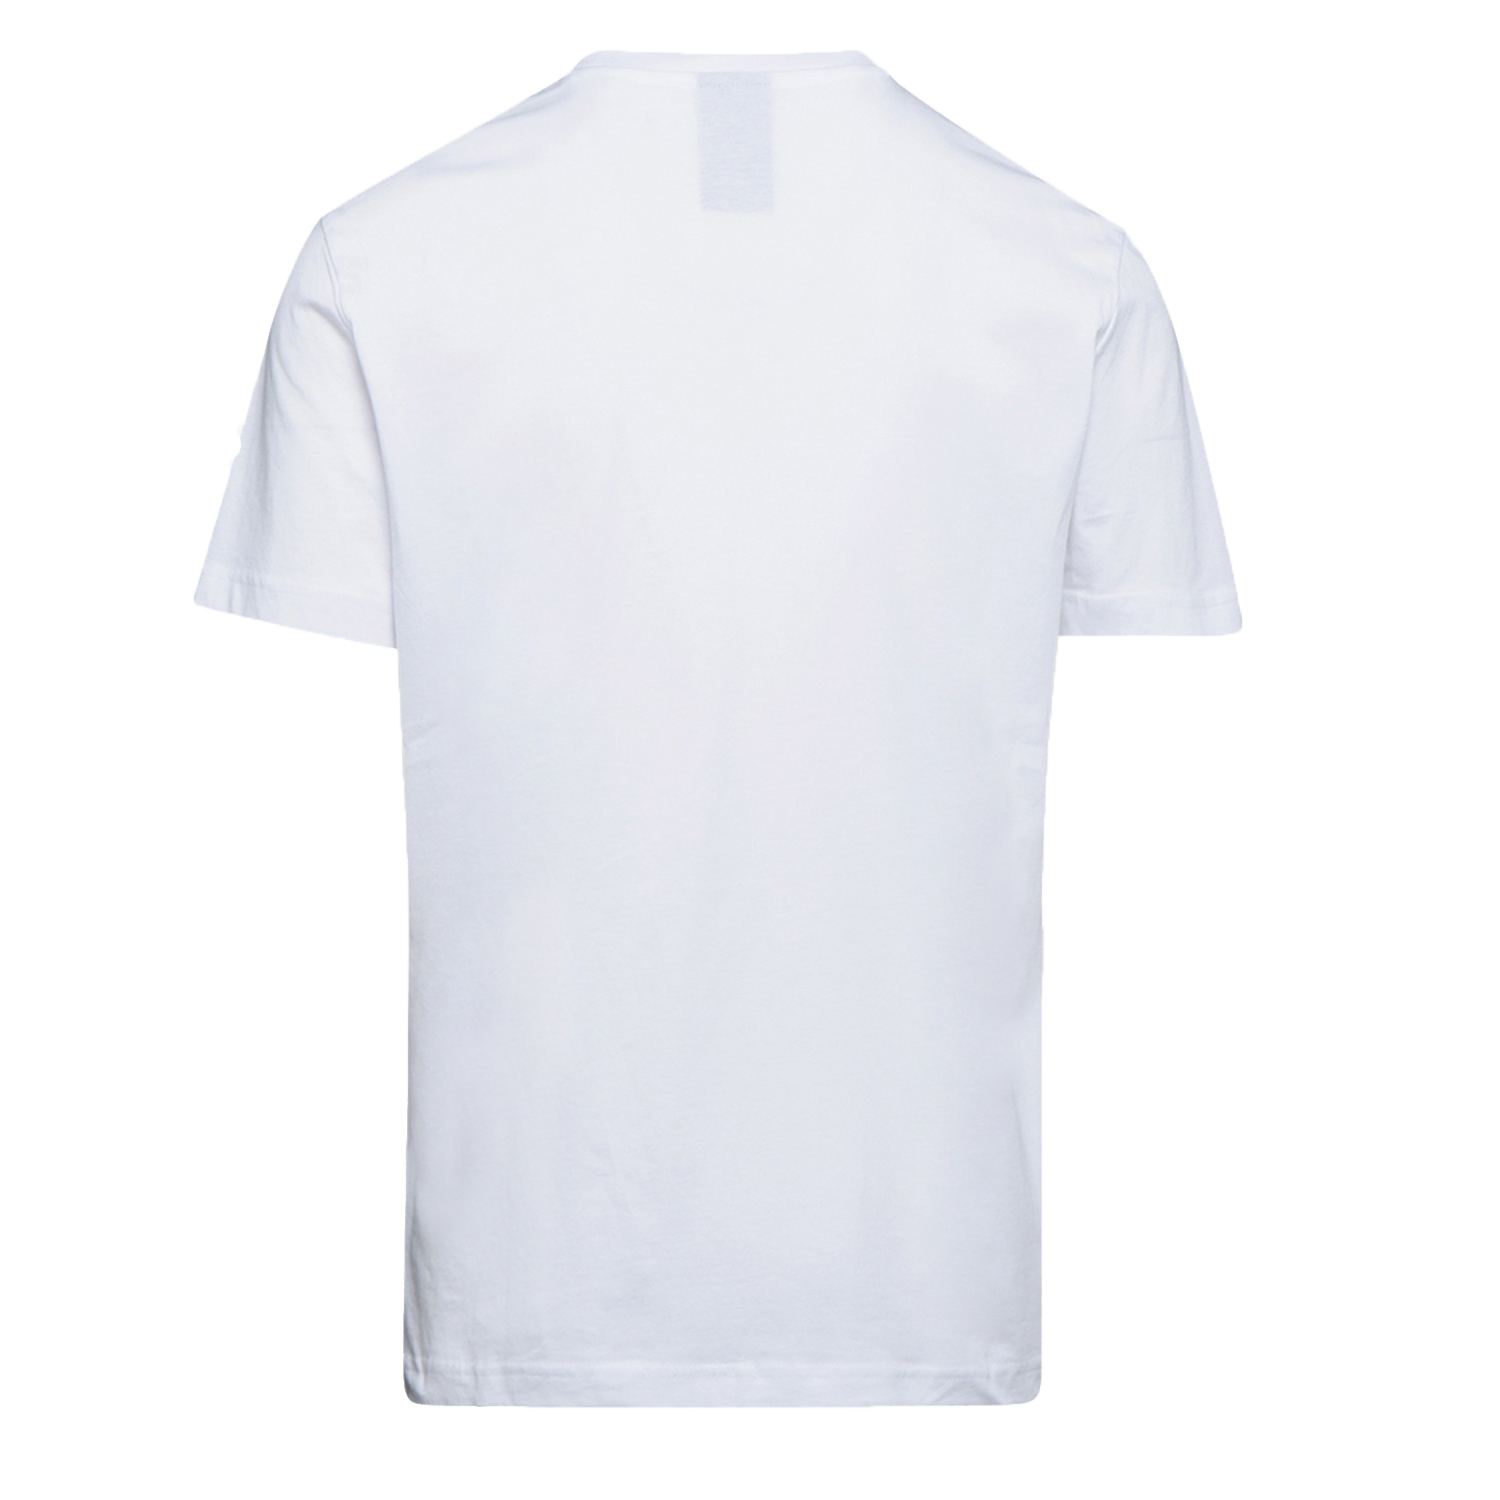 Tee-shirt de travail GRAPHIC ORGANIC à manches courtes blanc TS - DIADORA SPA - 702.176914